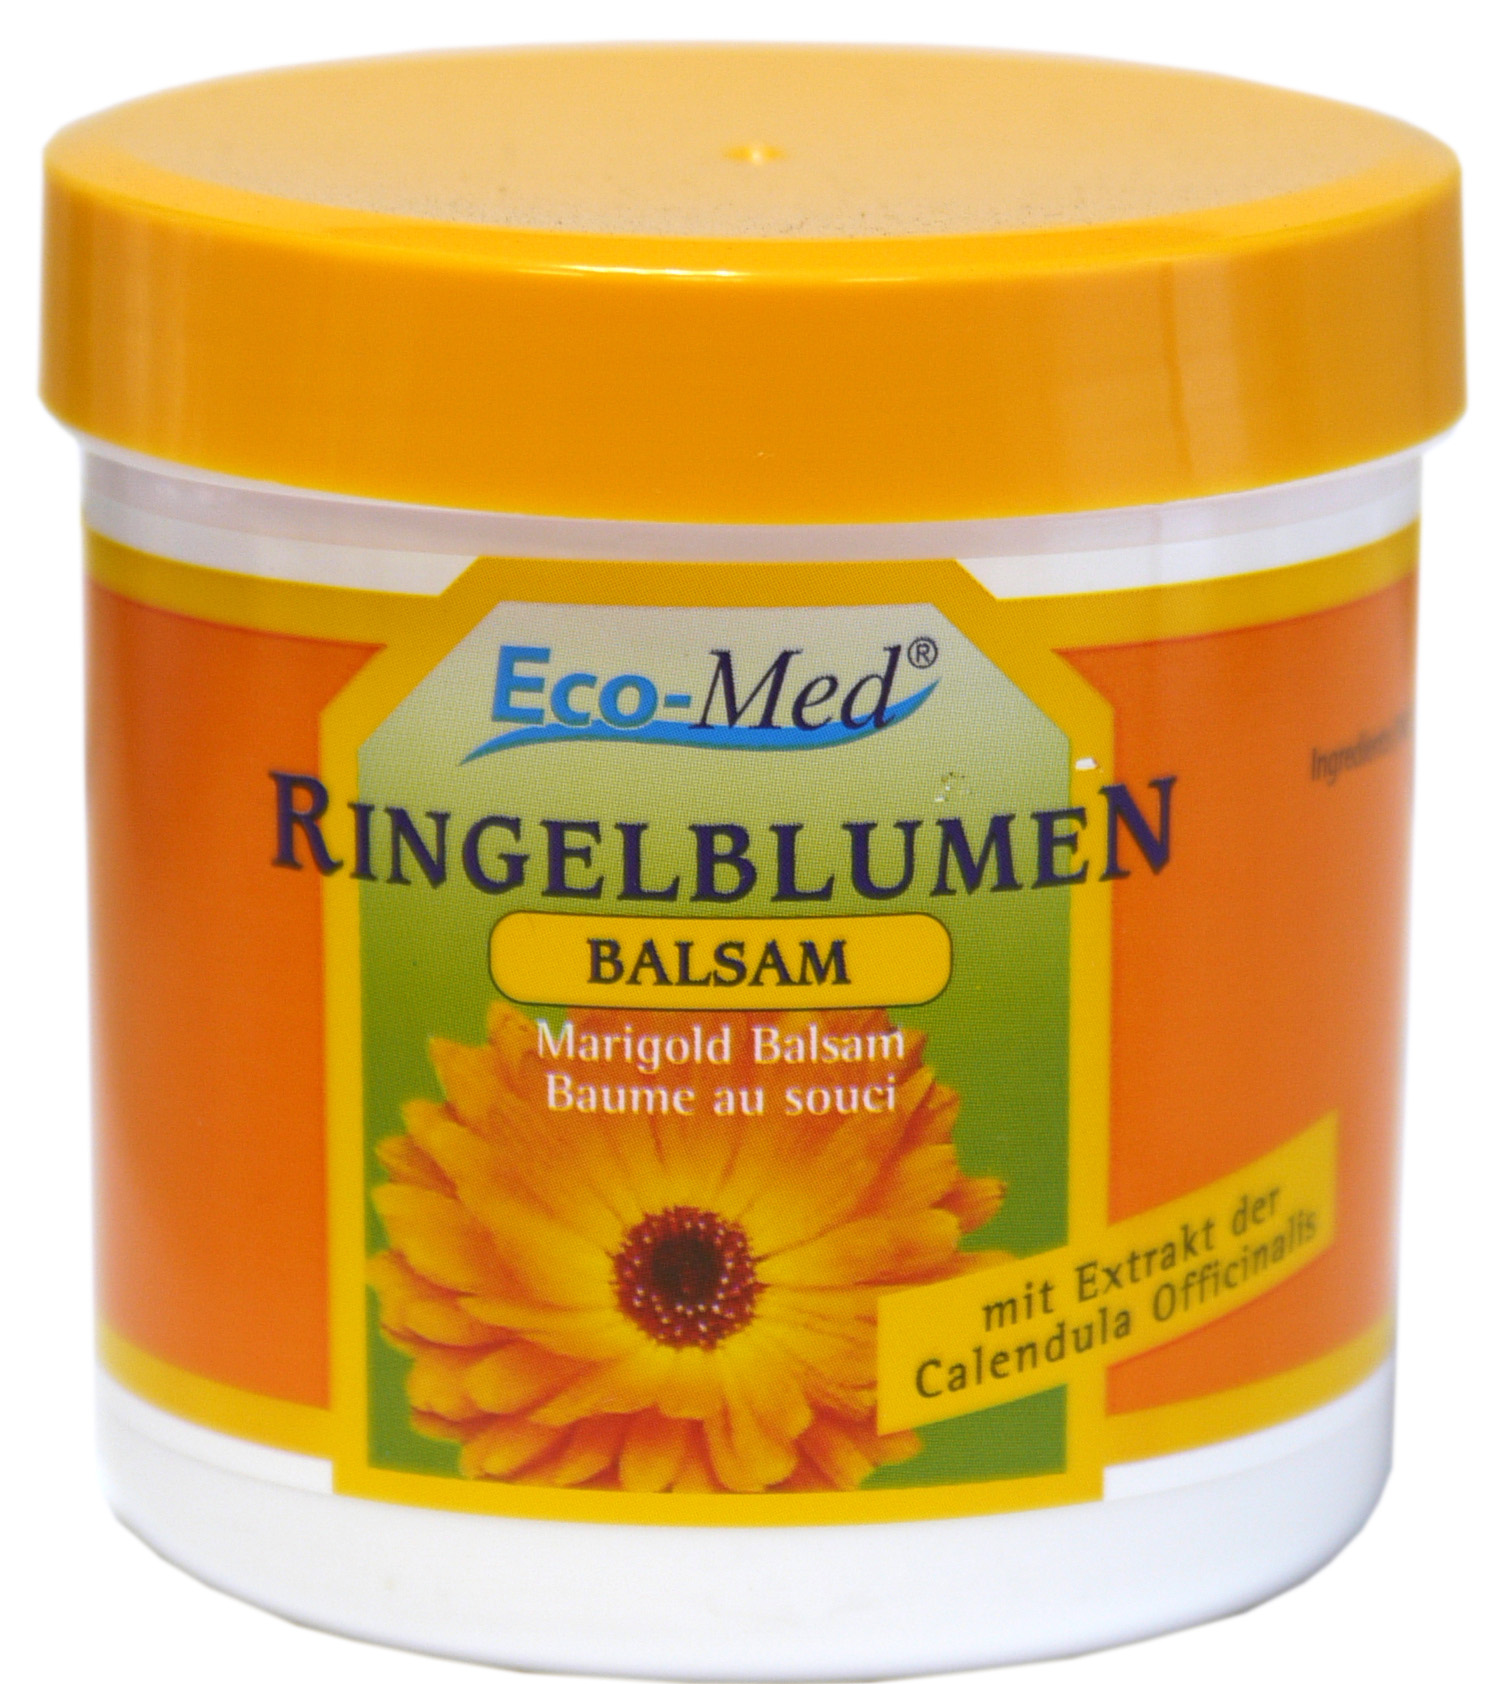 01856 - Eco-Med Ringelblumen Balsam 250 ml